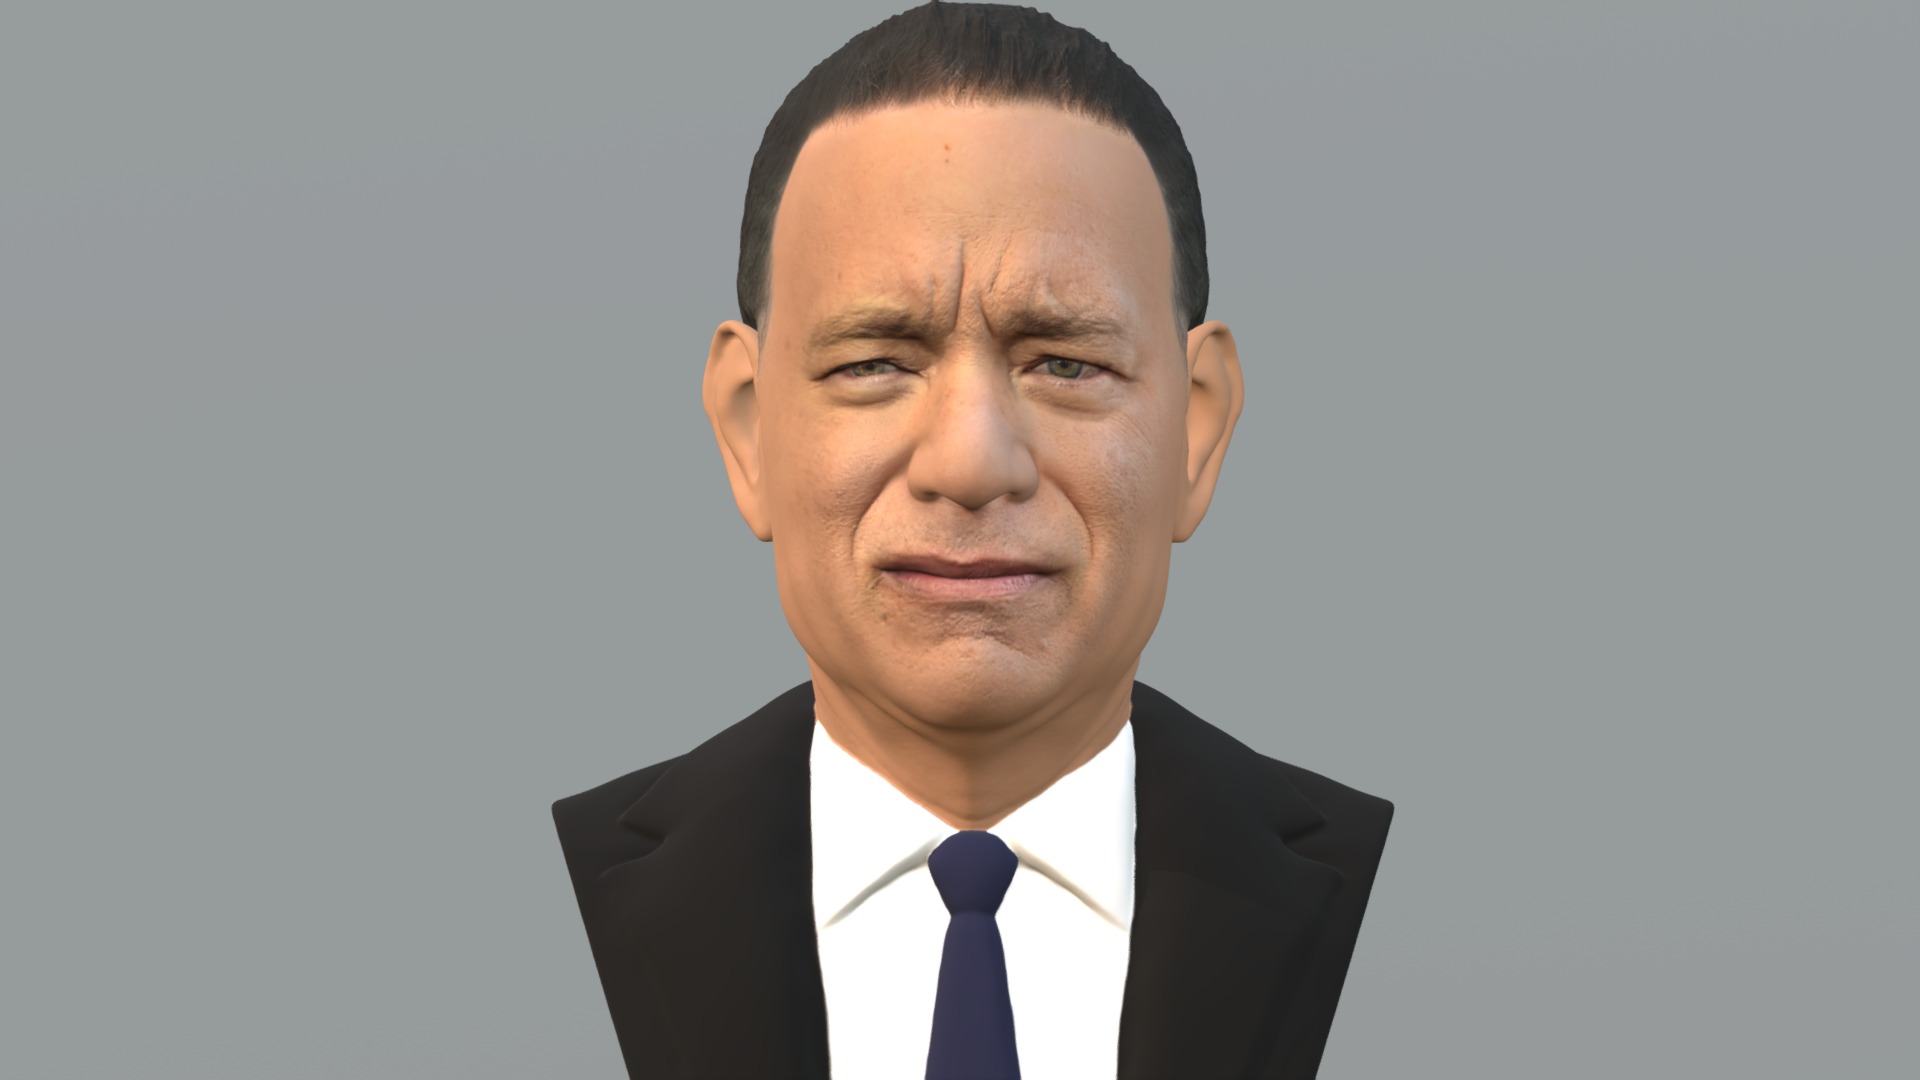 3D model Tom Hanks bust for full color 3D printing - This is a 3D model of the Tom Hanks bust for full color 3D printing. The 3D model is about a man in a suit.